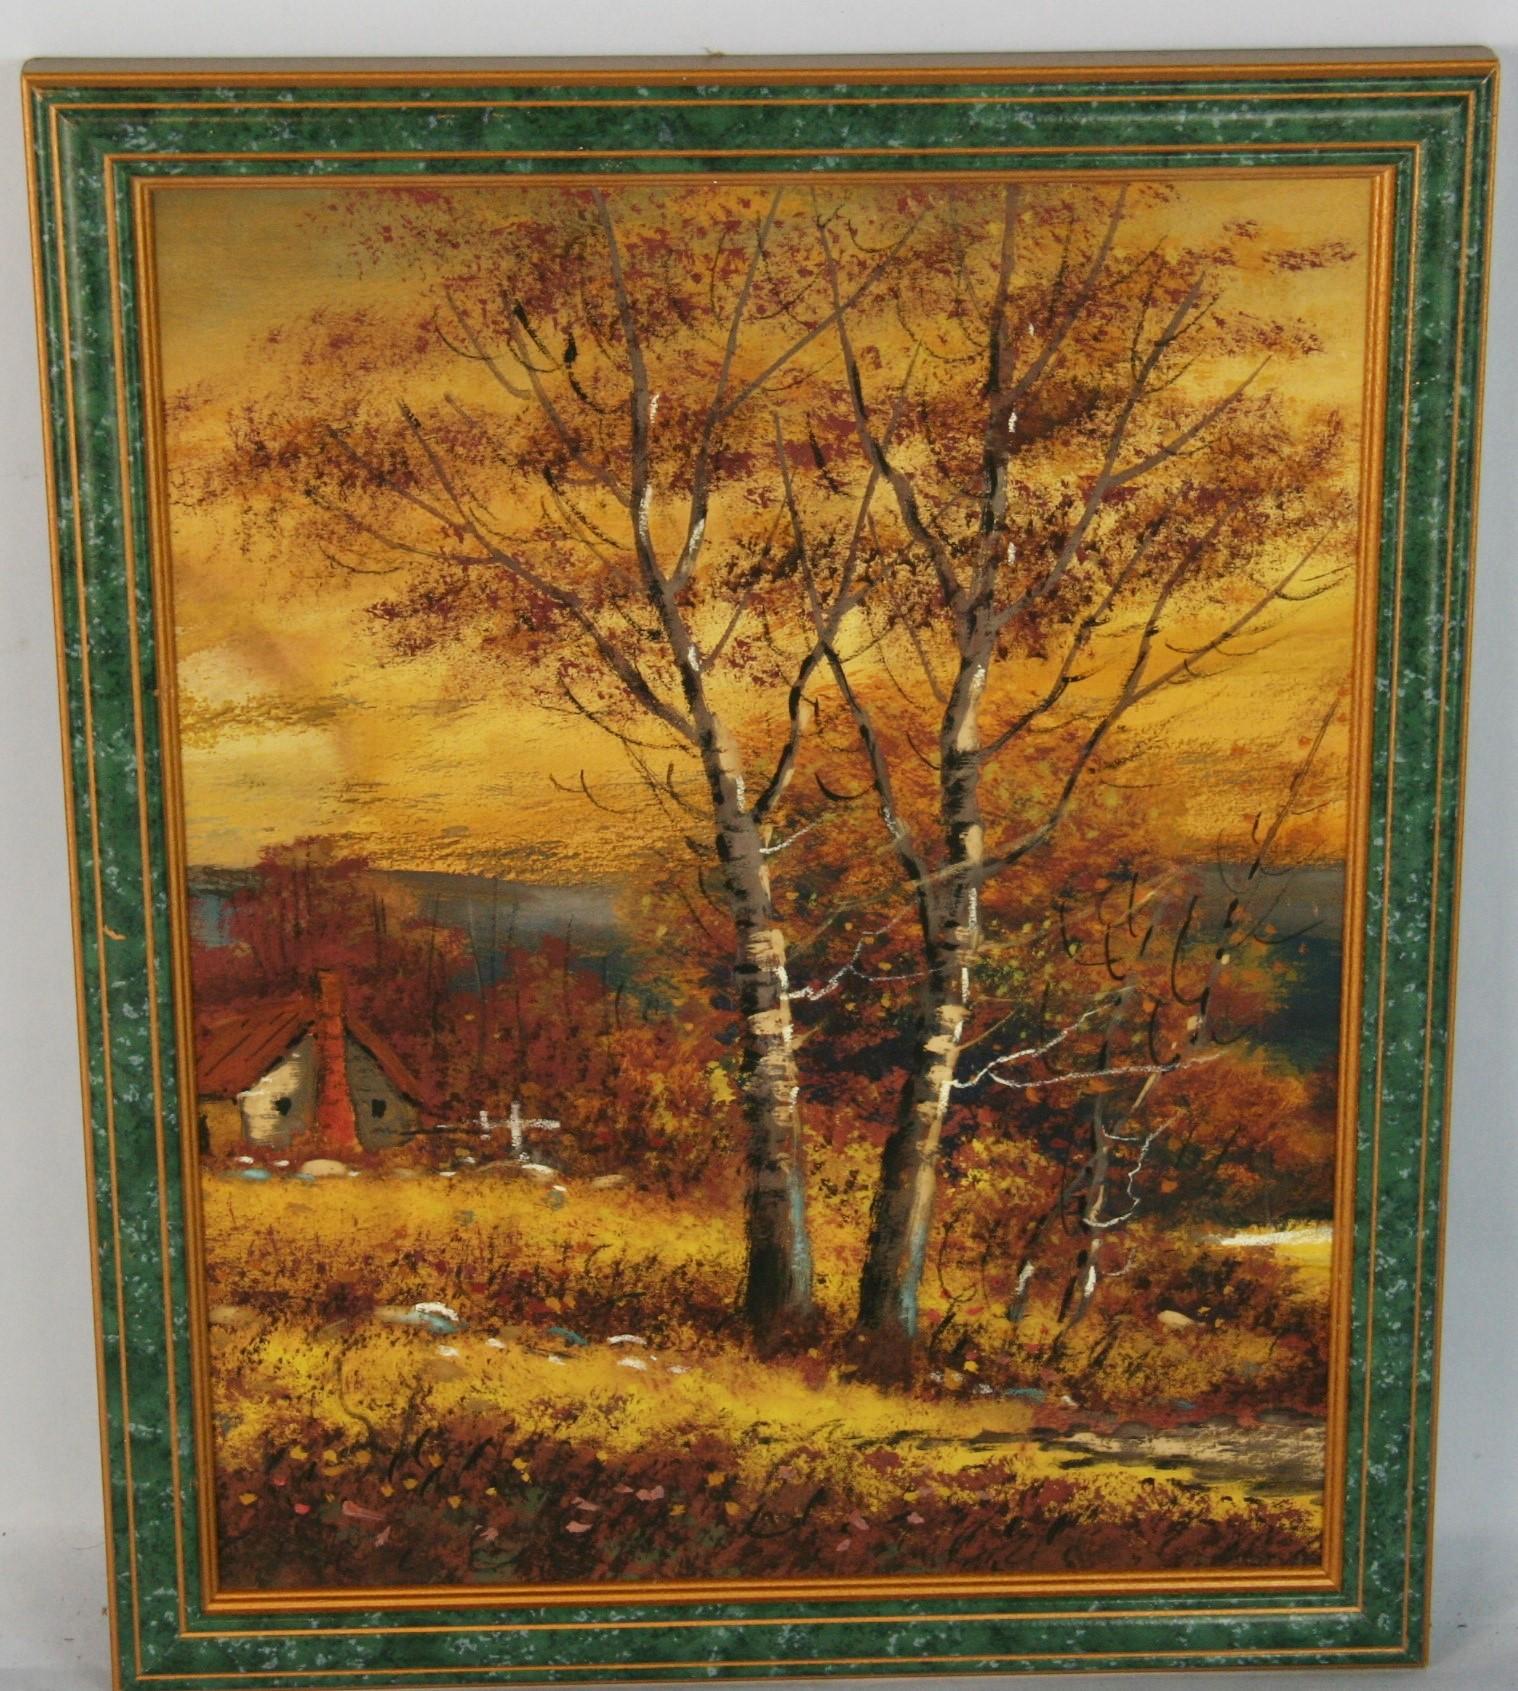 Landscape Painting Unknown - Hudson River School, peinture à la gouache d'un paysage d'automne 1910